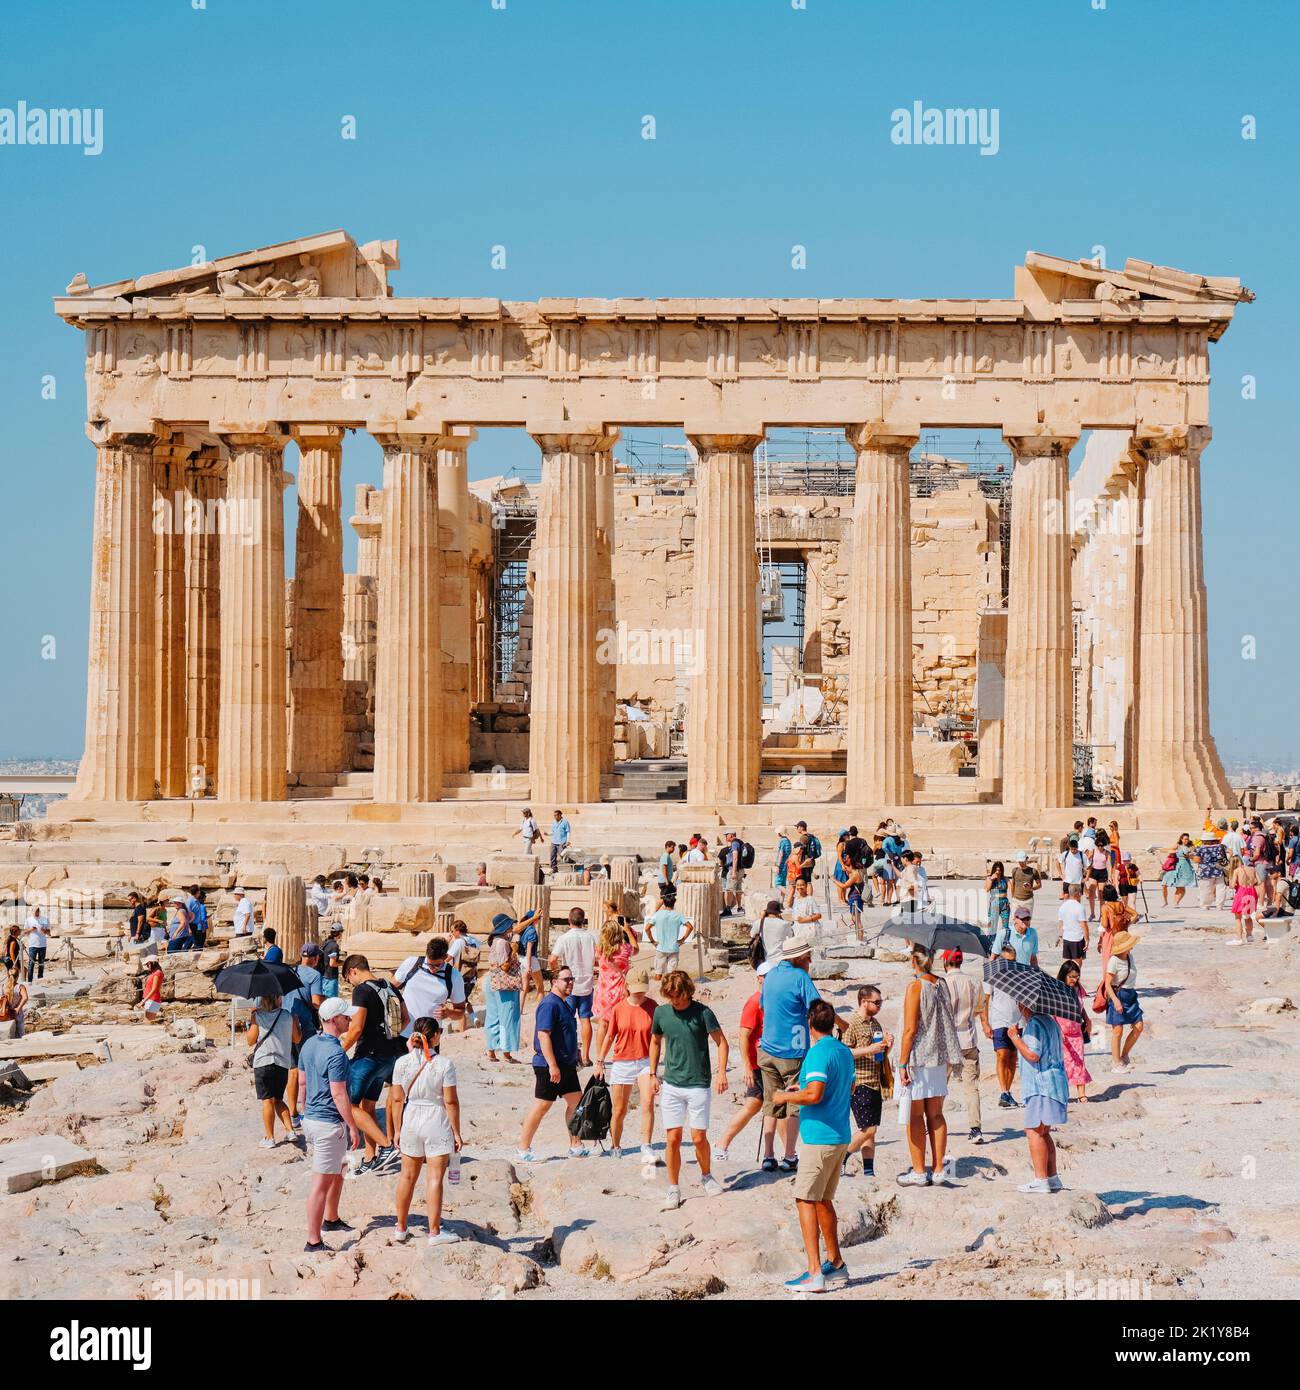 Atenas, Grecia - 30 de agosto de 2022: Una multitud de visitantes delante de los restos del famoso Partenón, en la Acrópolis de Atenas, Grecia Foto de stock